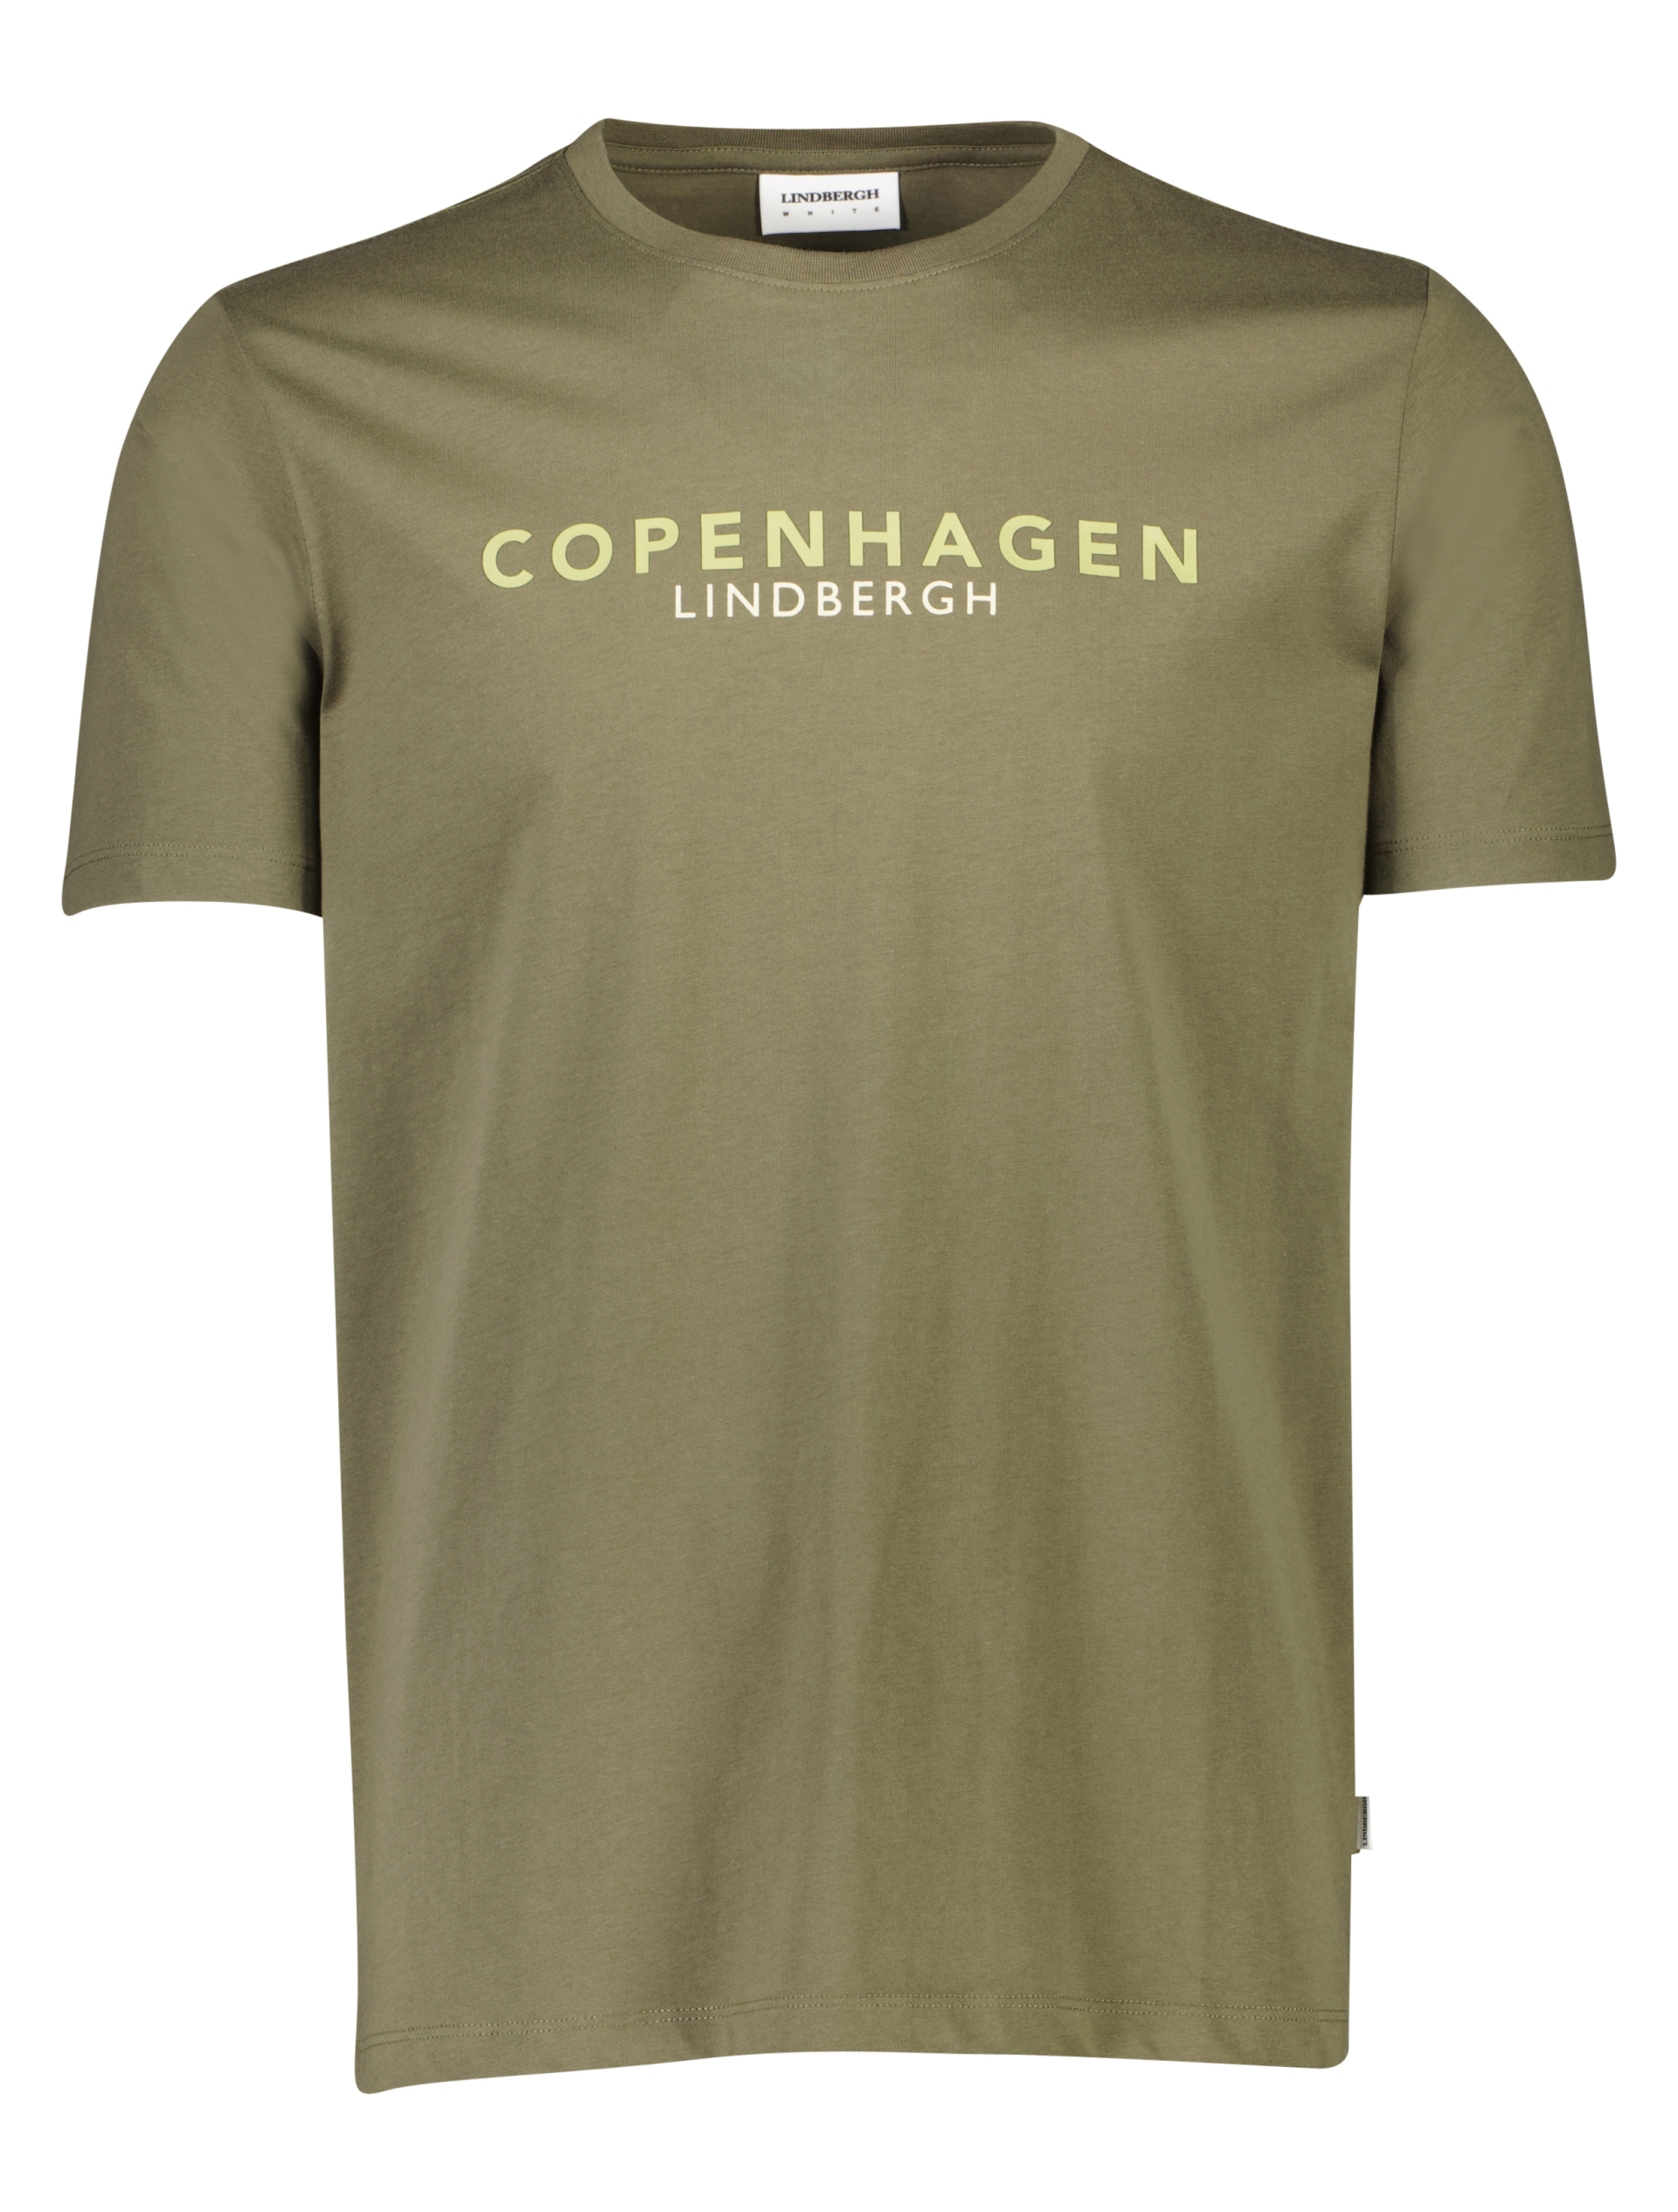 Lindbergh T-shirt grön / lt army 124